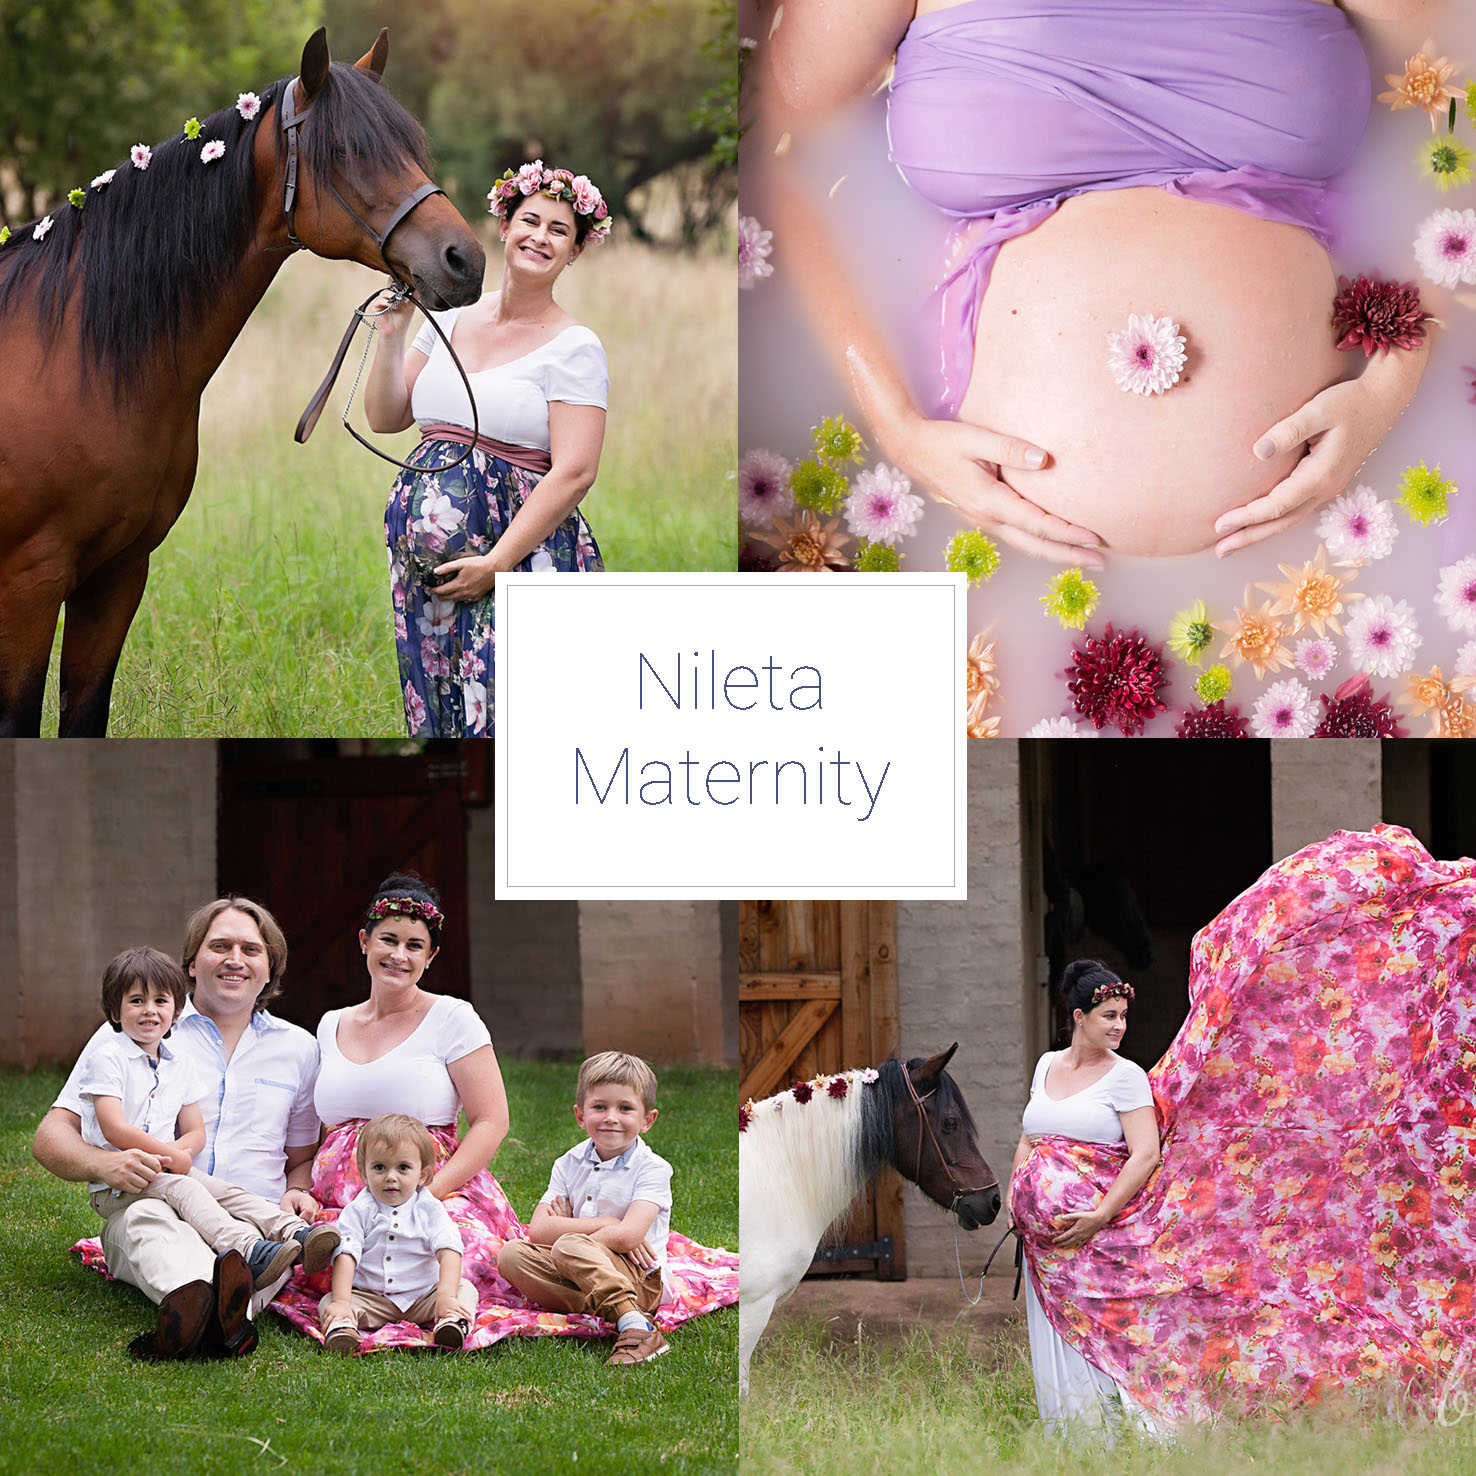 Nileta Maternity